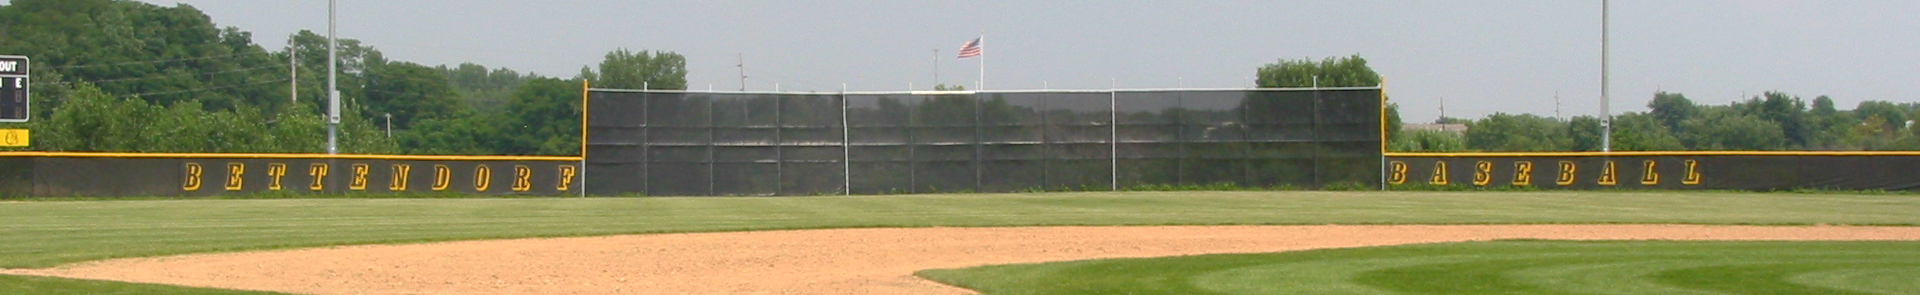 Douglas Baseball fence Screen